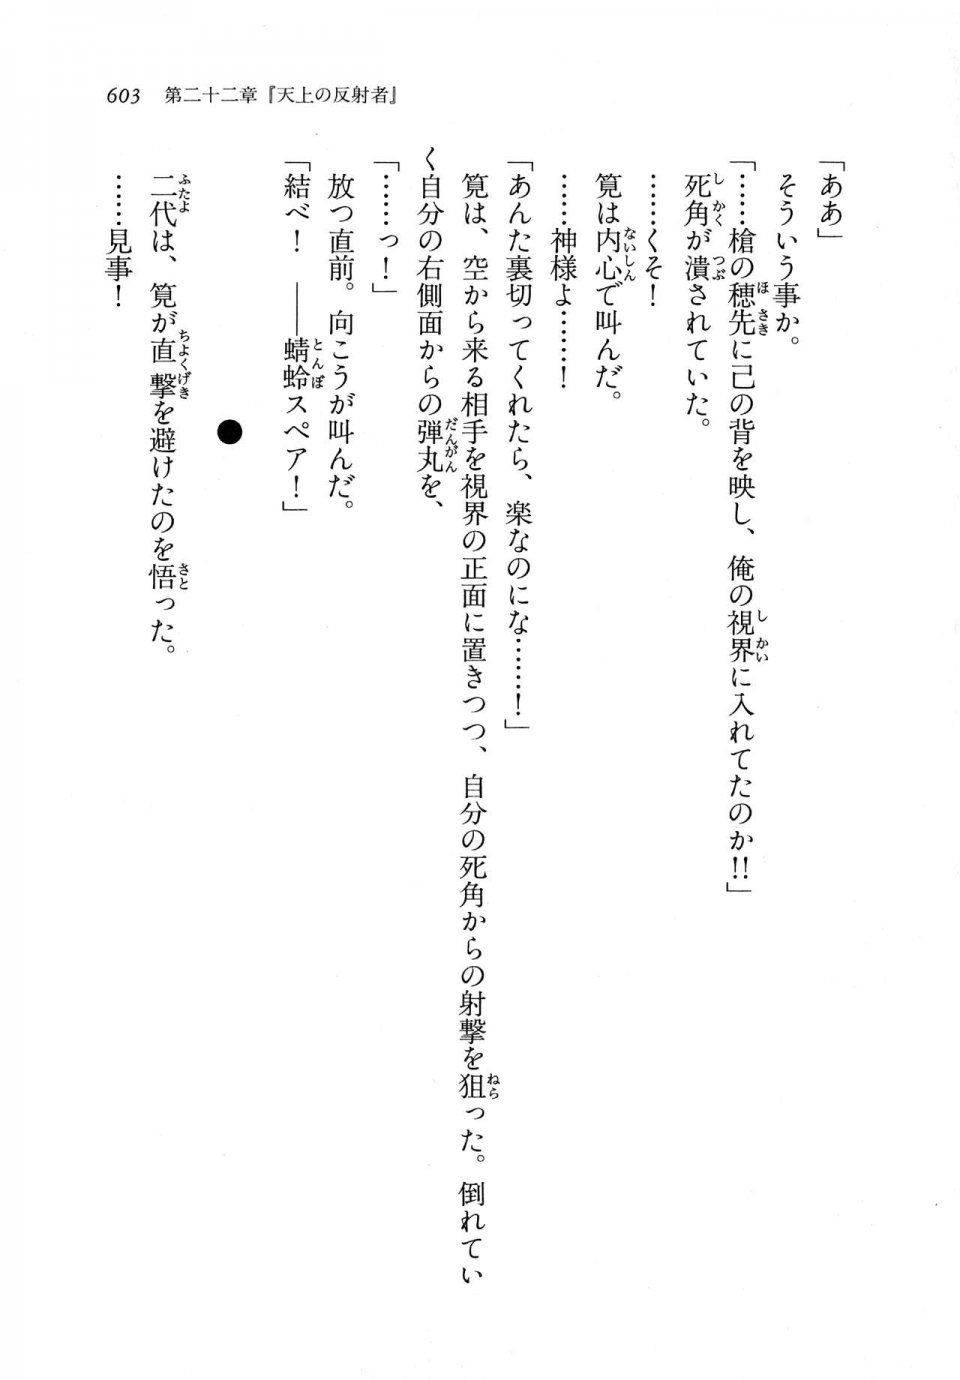 Kyoukai Senjou no Horizon LN Vol 11(5A) - Photo #603